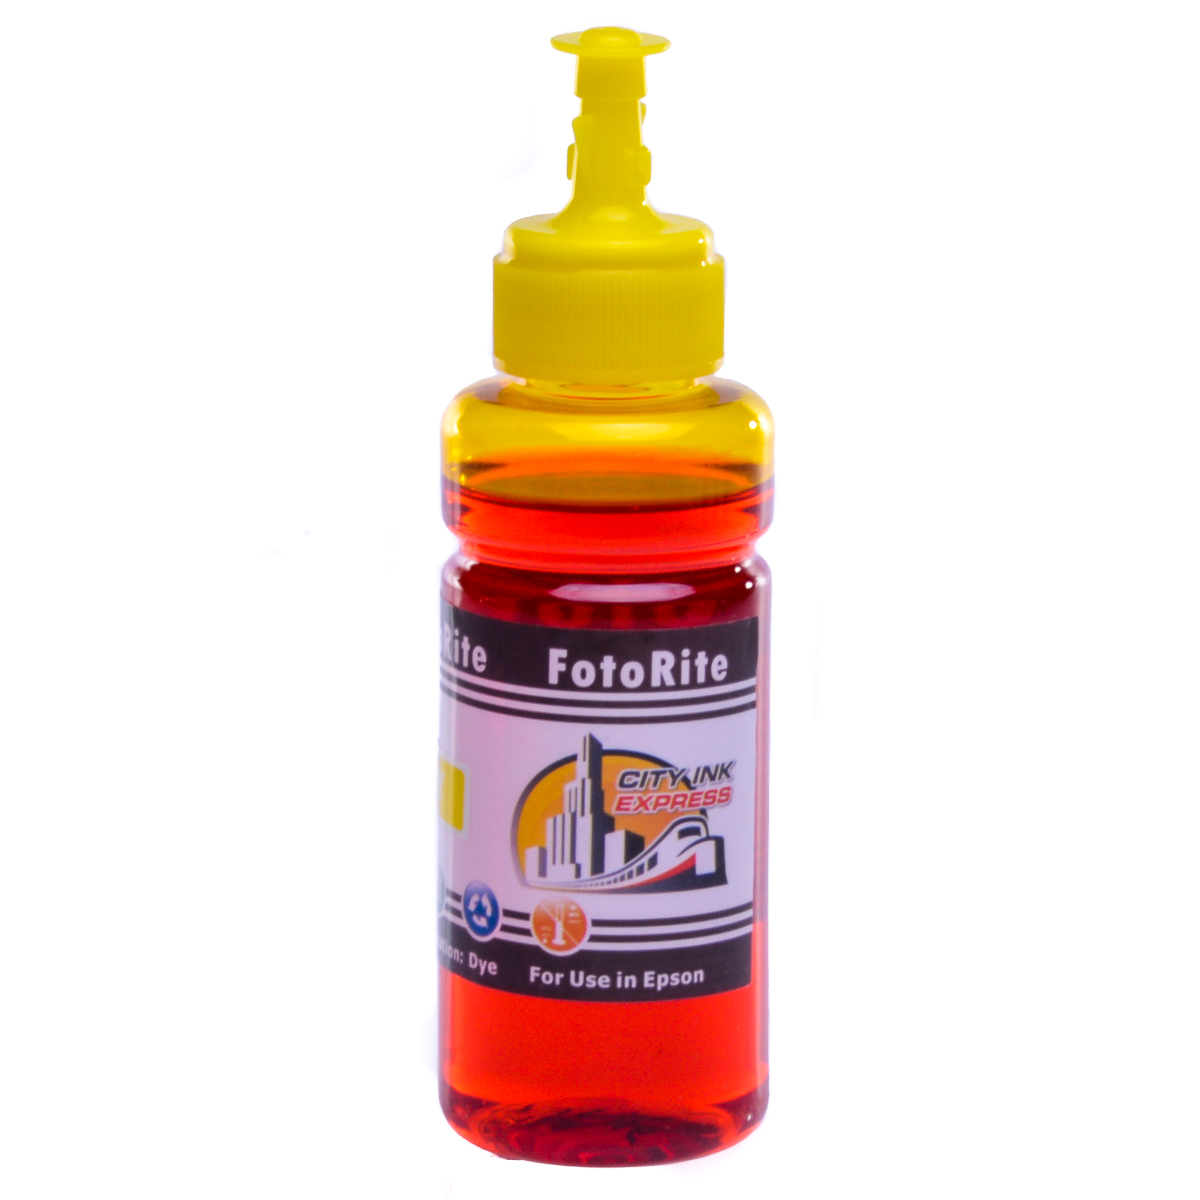 Cheap Yellow dye ink replaces Epson XP-8500 - 378 - C13T37844010